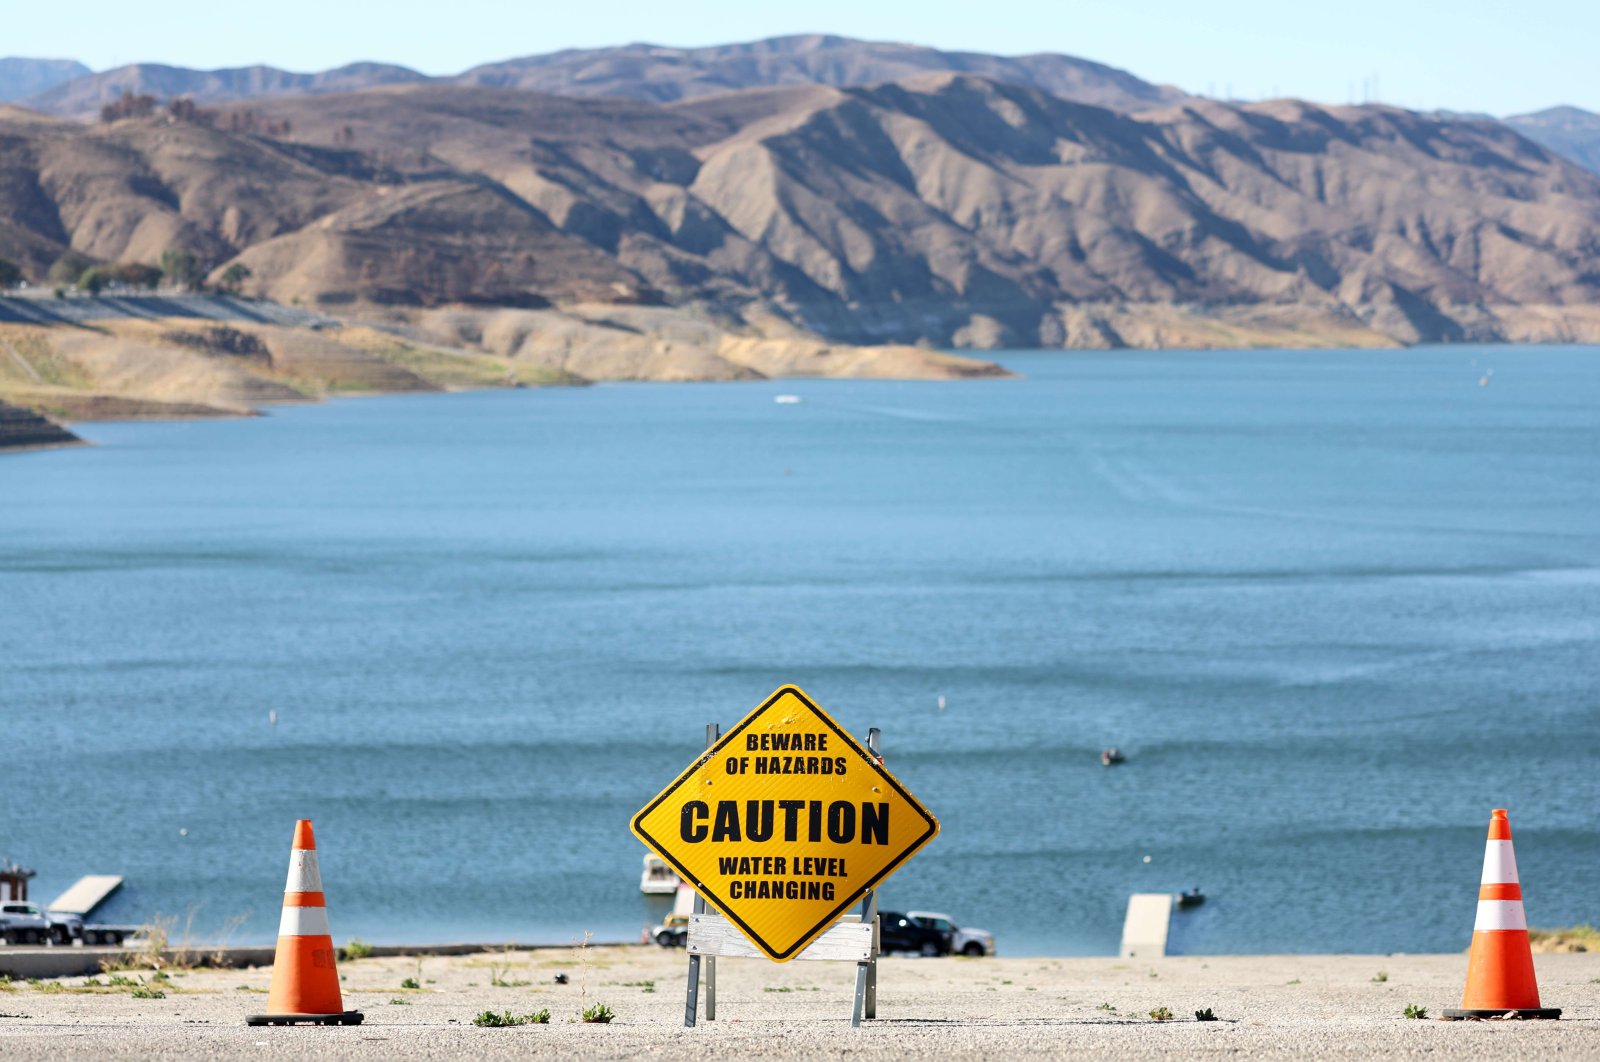 Sumur California mengering karena air tanah menipis karena kekeringan